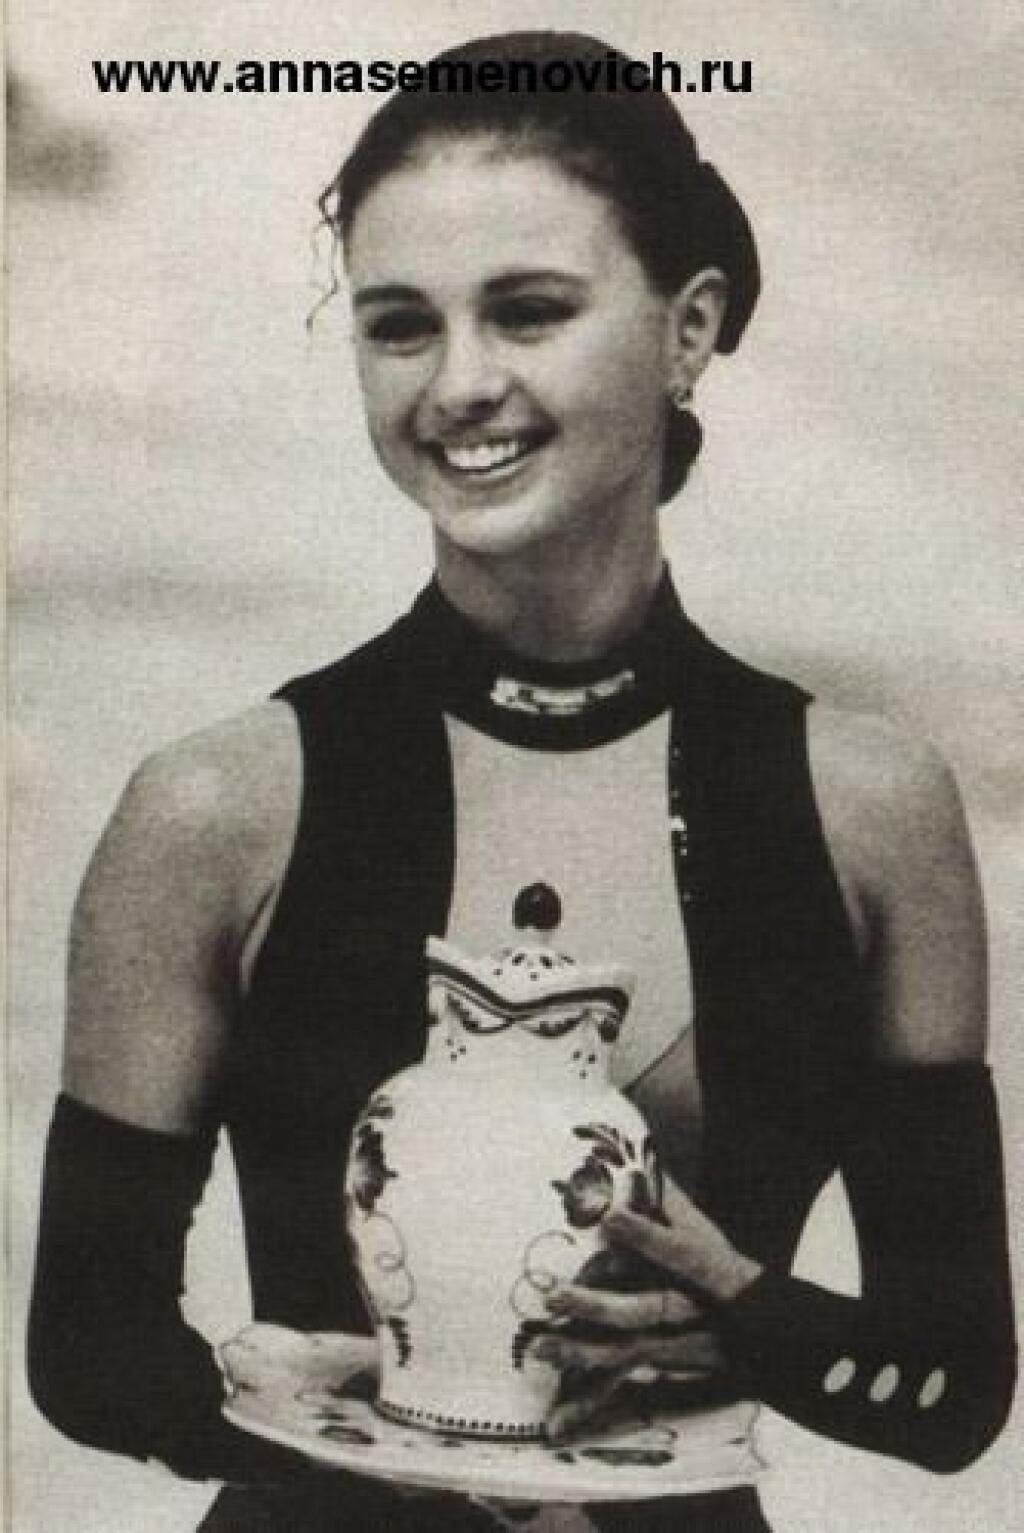 Анна Семенович в молодости